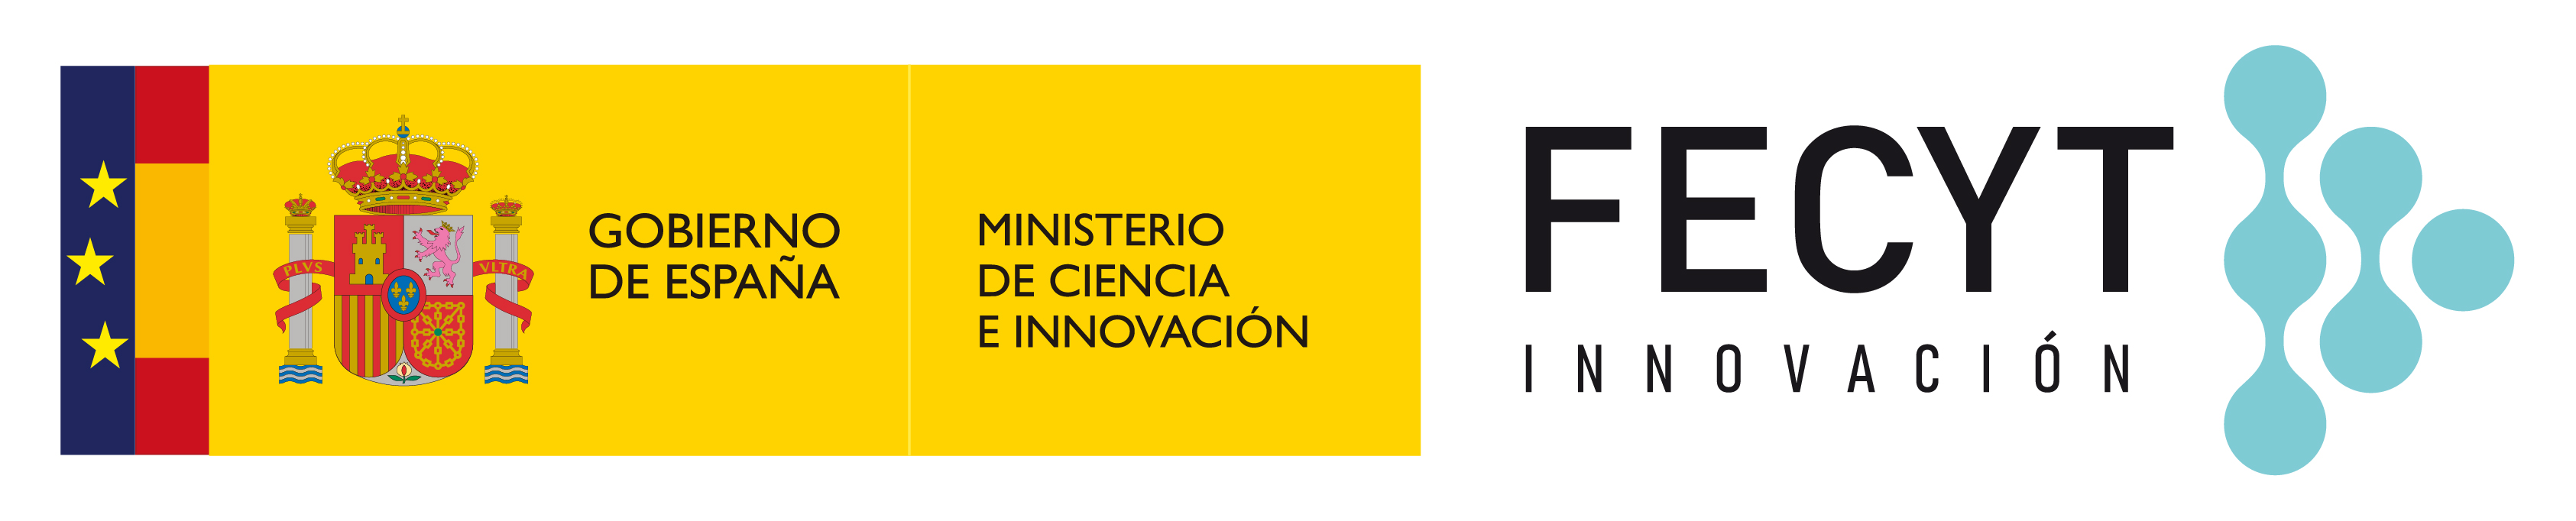 Gobierno de España, Ministerio de Ciencia e Innovación. FECYT Innovación